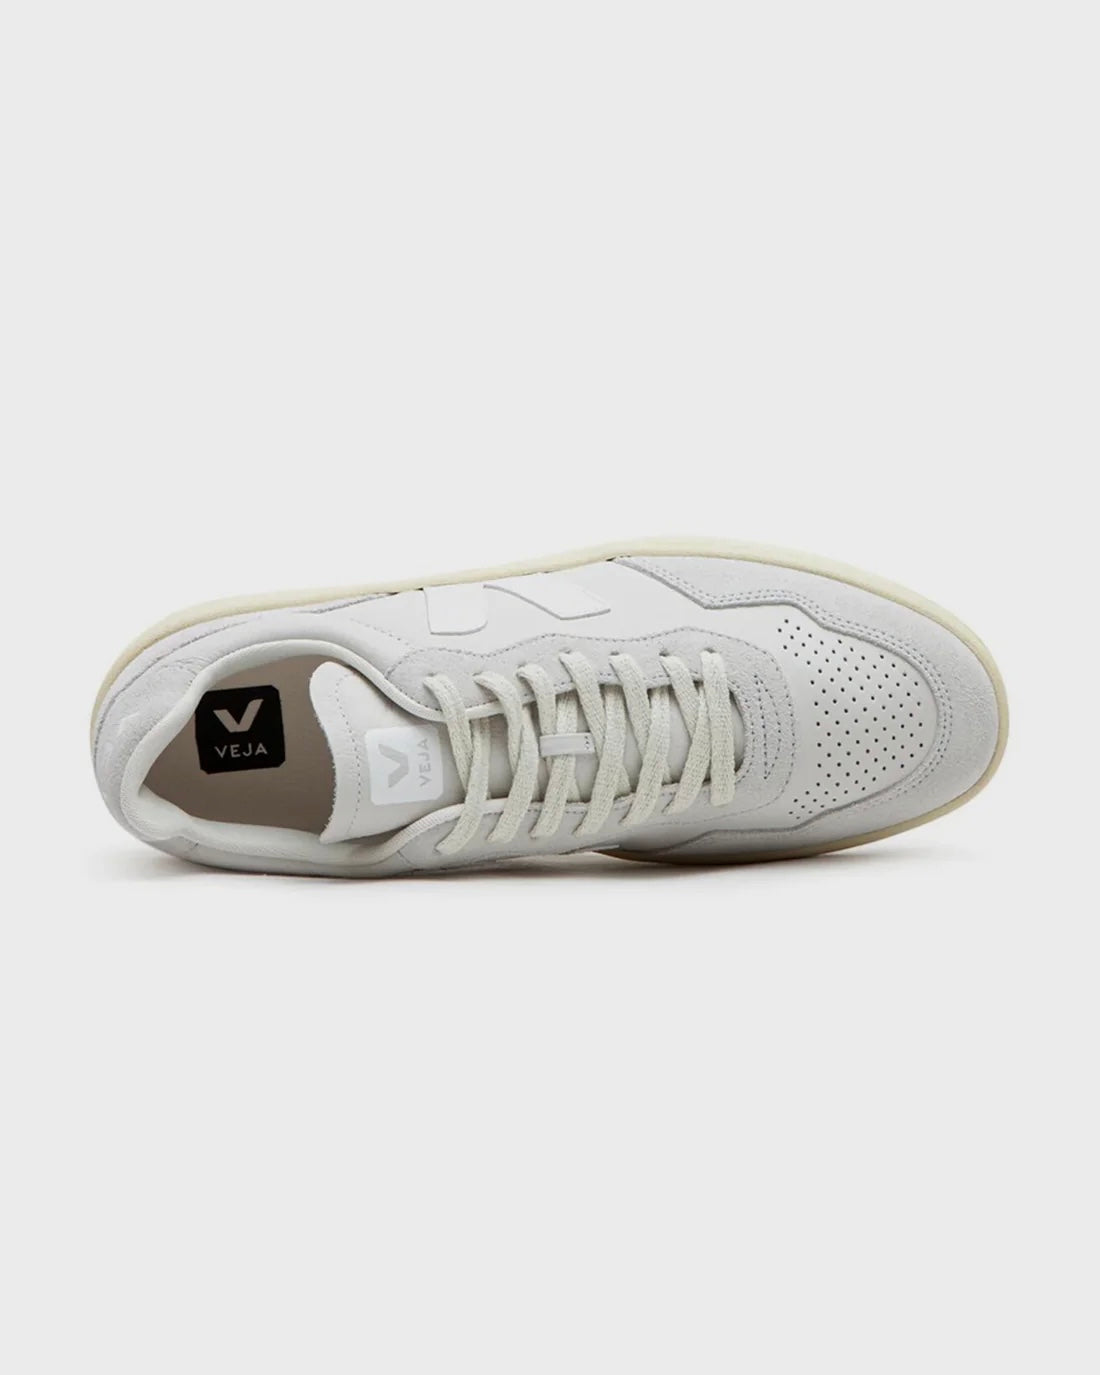 V90 white sneakers - Veja